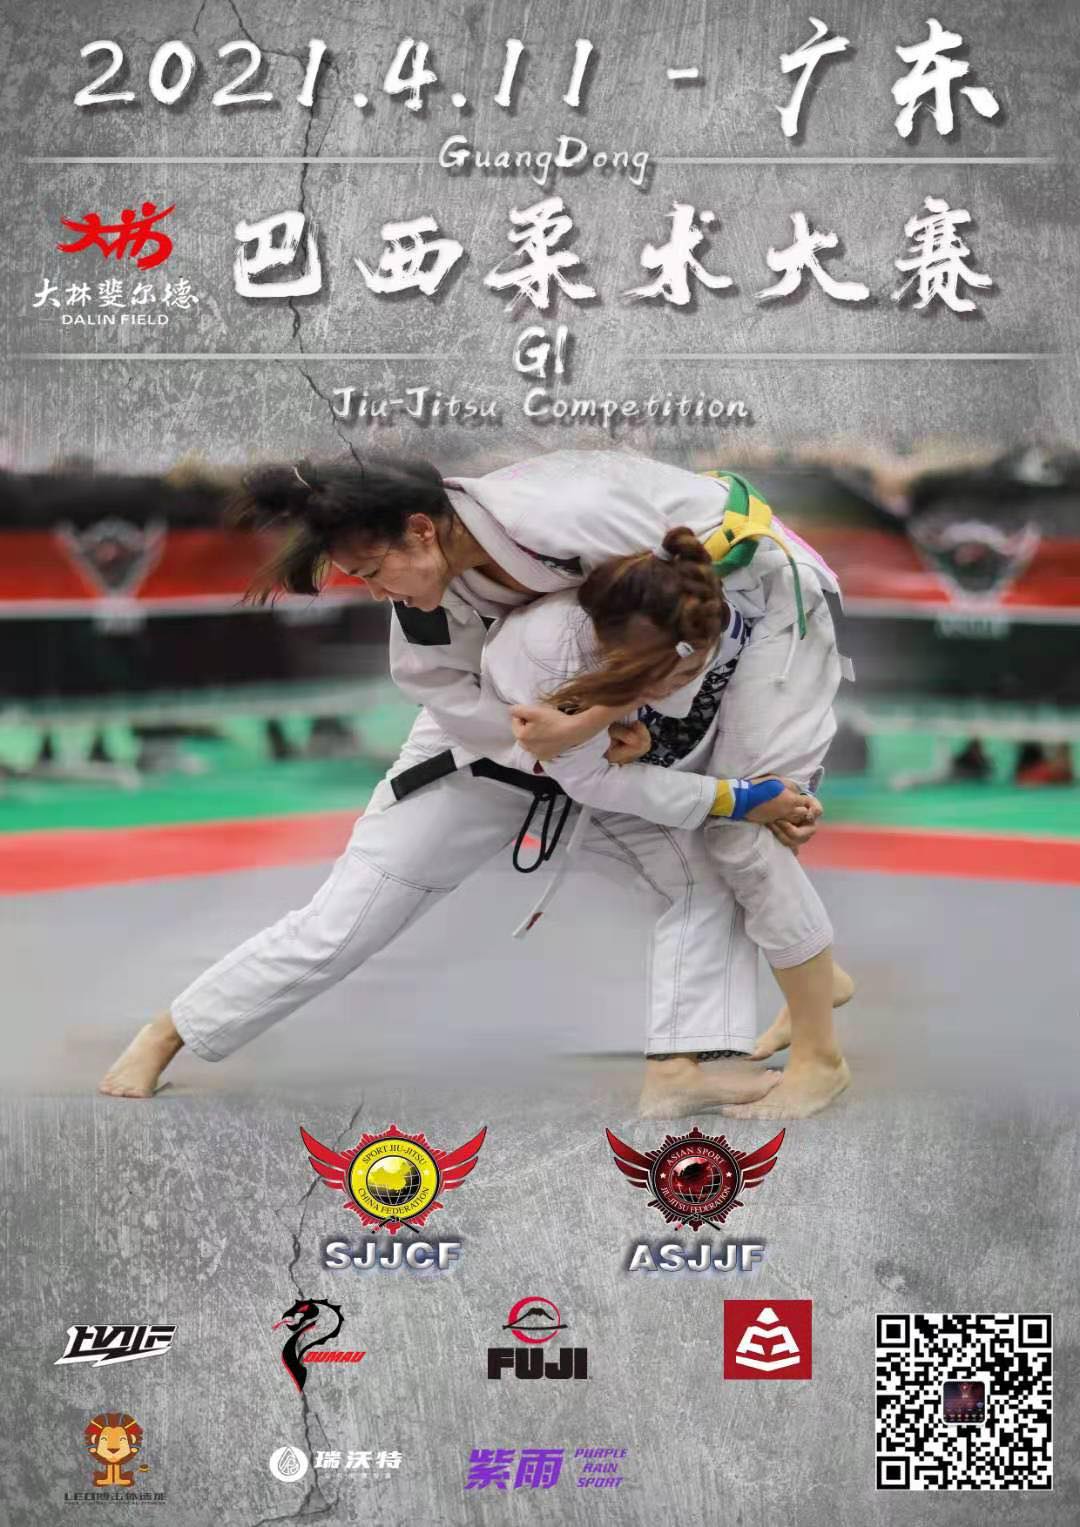 sjjcf guangdong jiu jitsu championship 2021